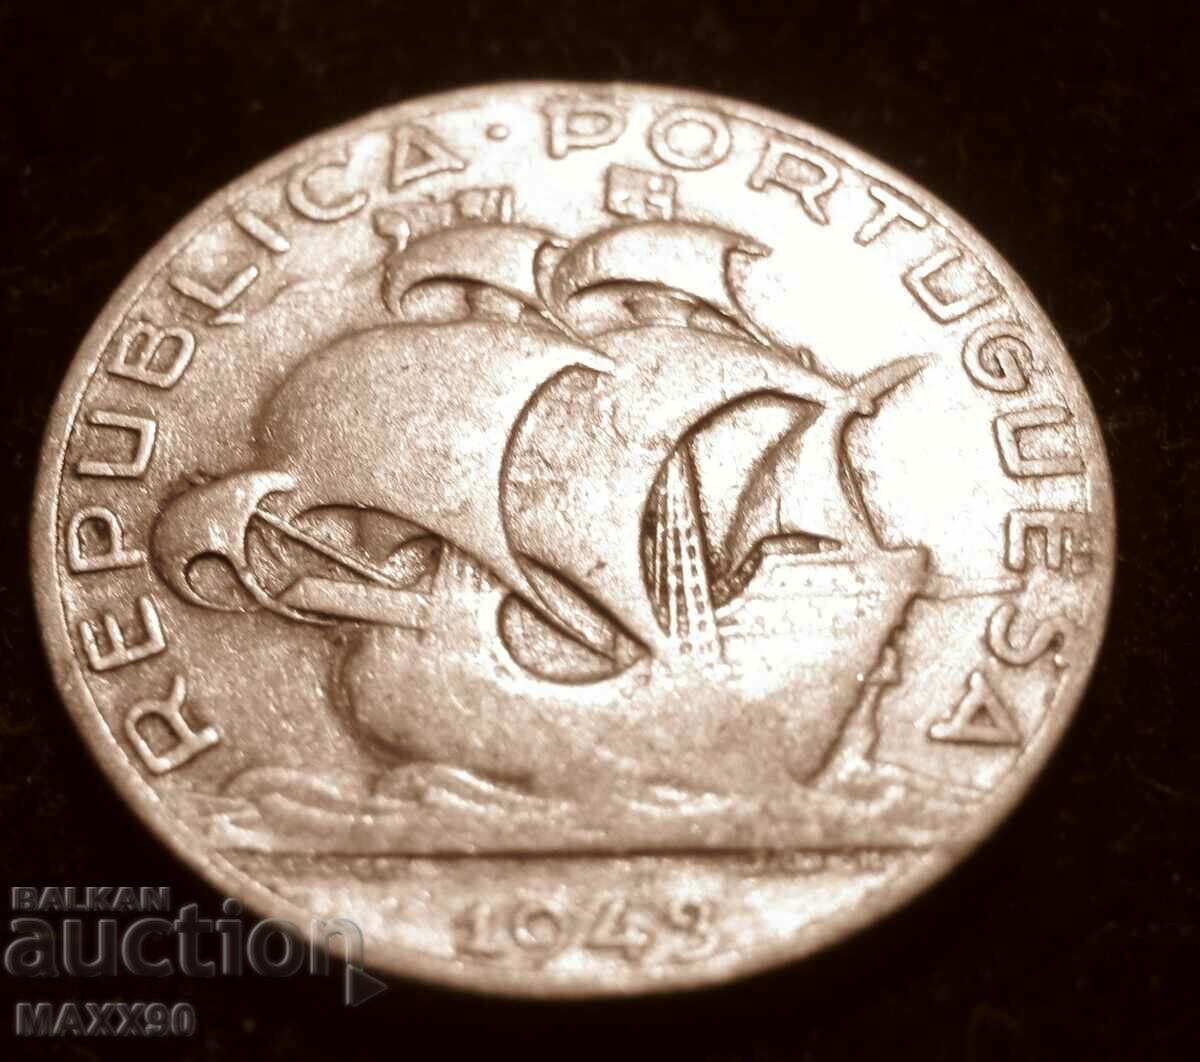 Portugal 5 escudos 1943, silver